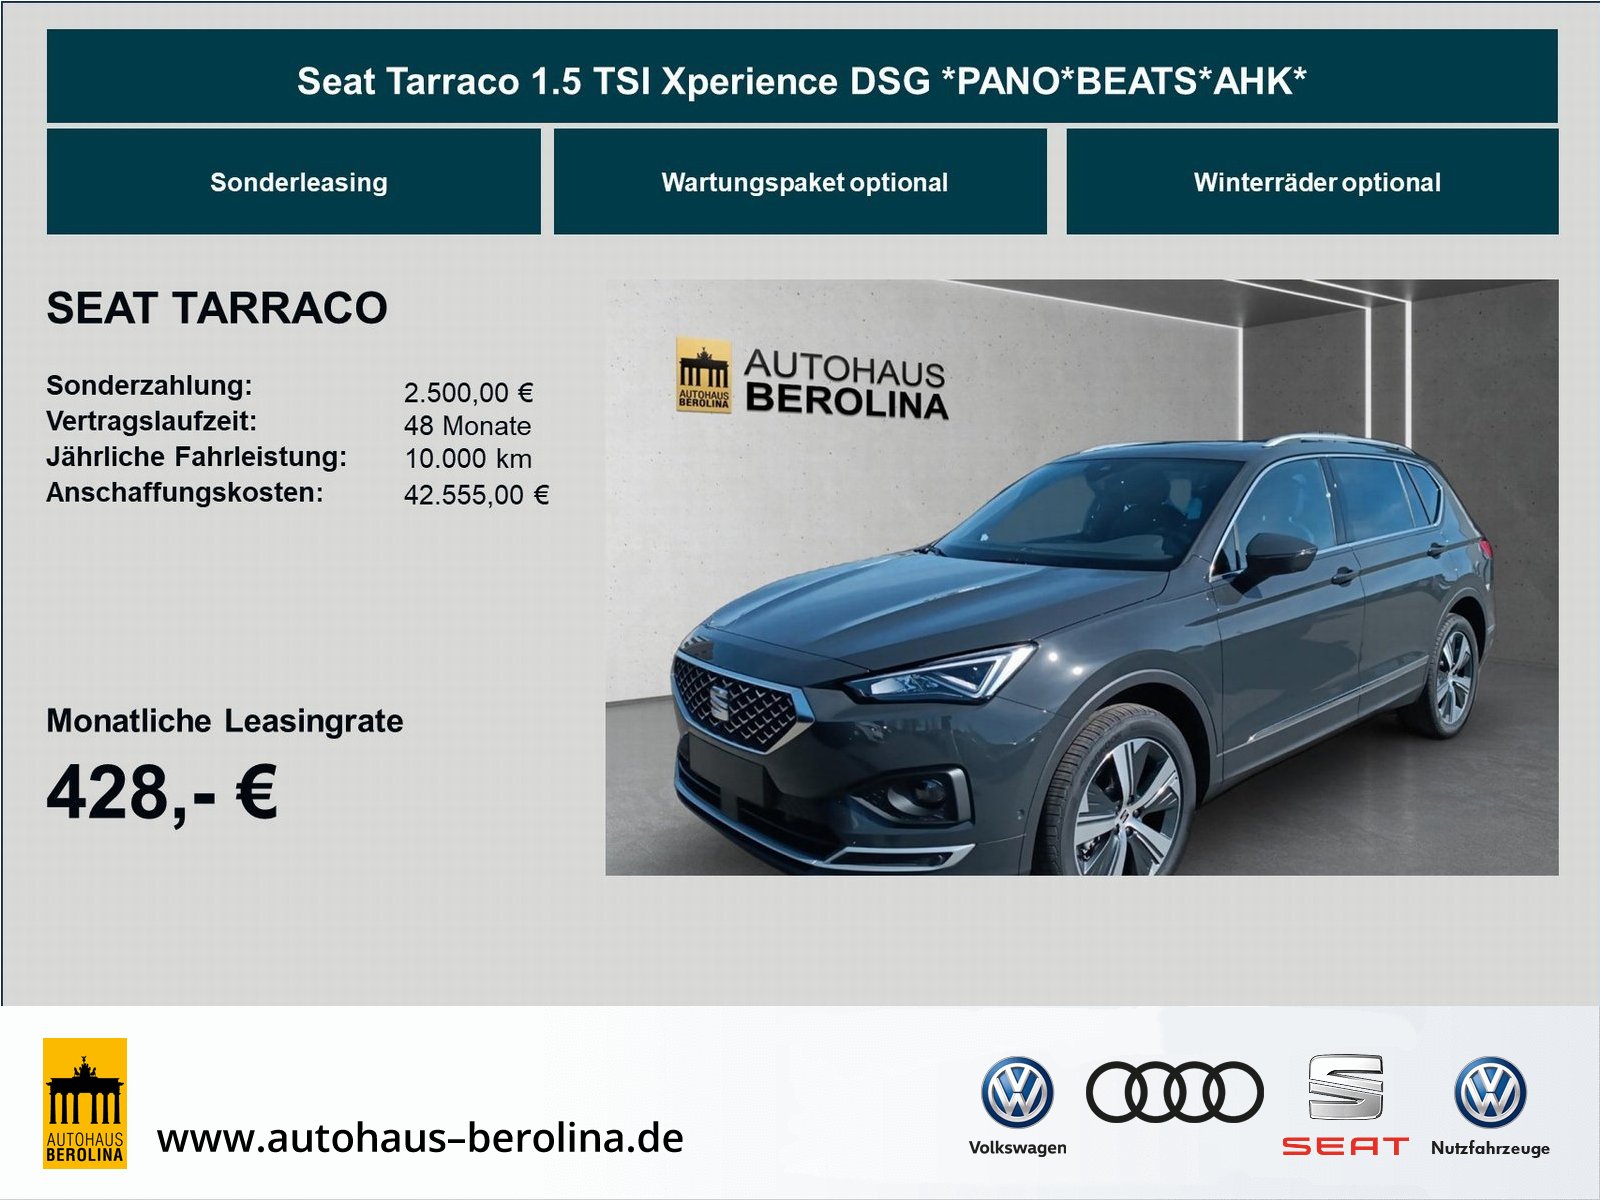 Seat Tarraco 1.5 TSI Xperience BEATS